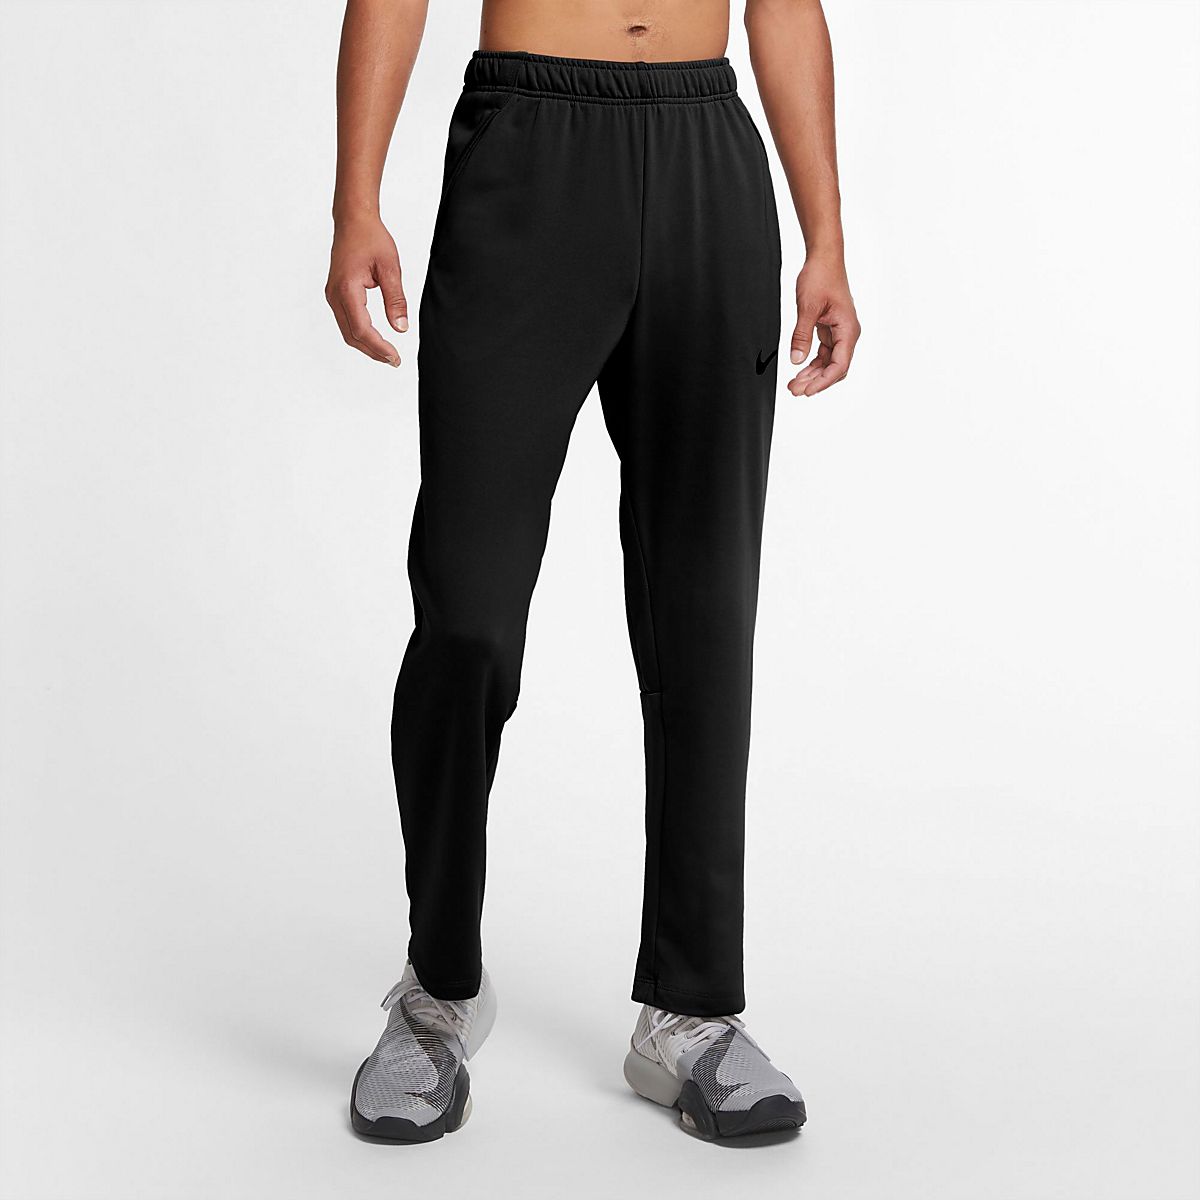 Nike Men's Epic Knit Pants |